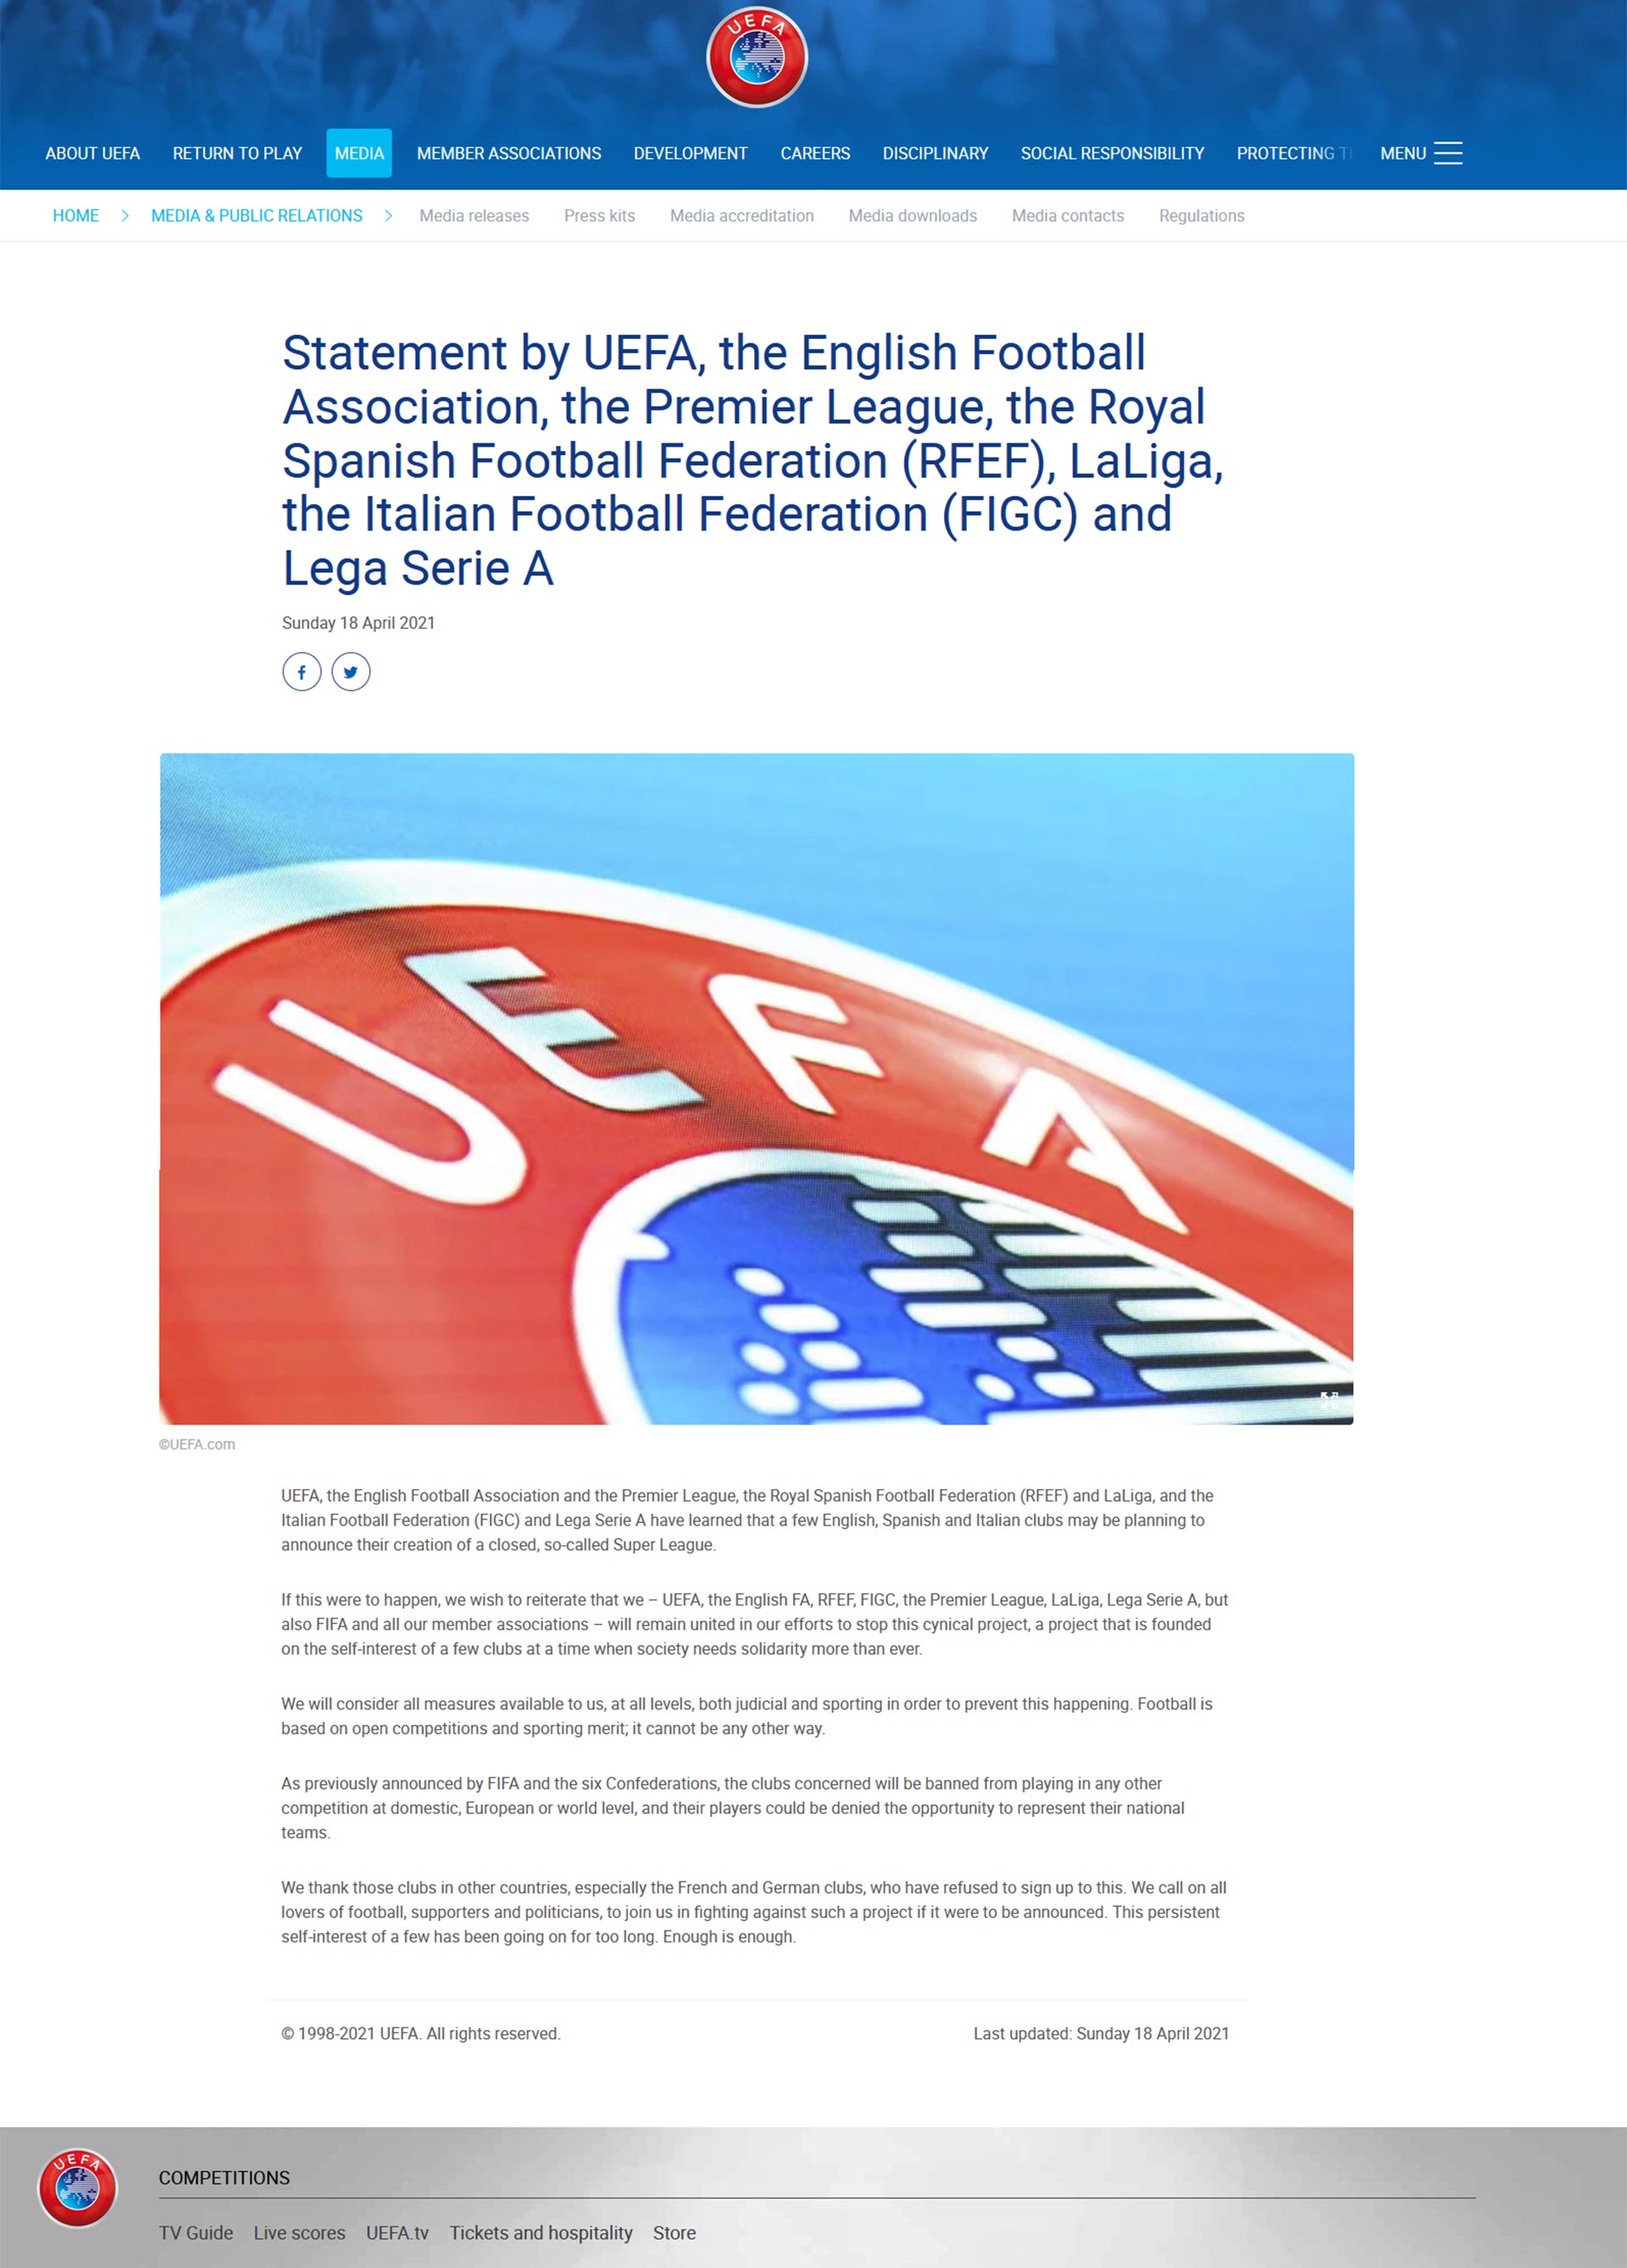 El comunicado de la UEFA 